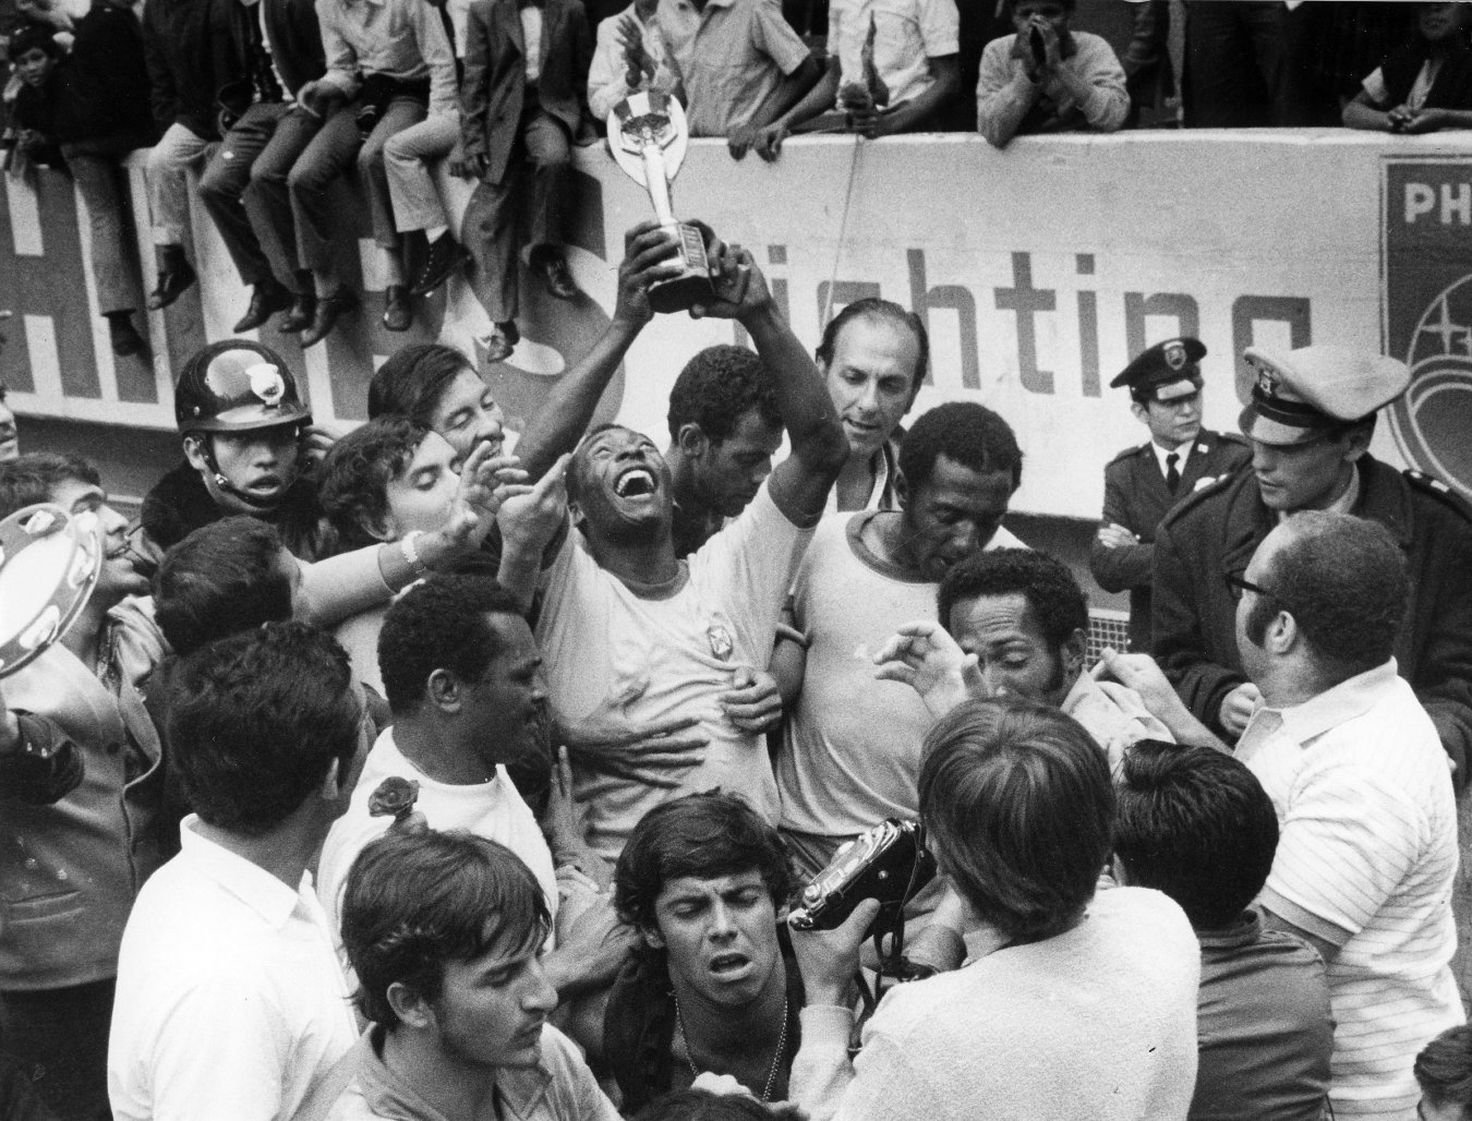 كأس العالم المكسيك. 21 يونيو 1970. النهائي في ملعب أزتيكا. البرازيل وإيطاليا. بيليه ، في الصورة مع كأس جول ريميه ، يحتفل بالنصر وكأس العالم للمرة الثالثة. وفاز فريق "كانارينها" 4-1 على "الزوري".